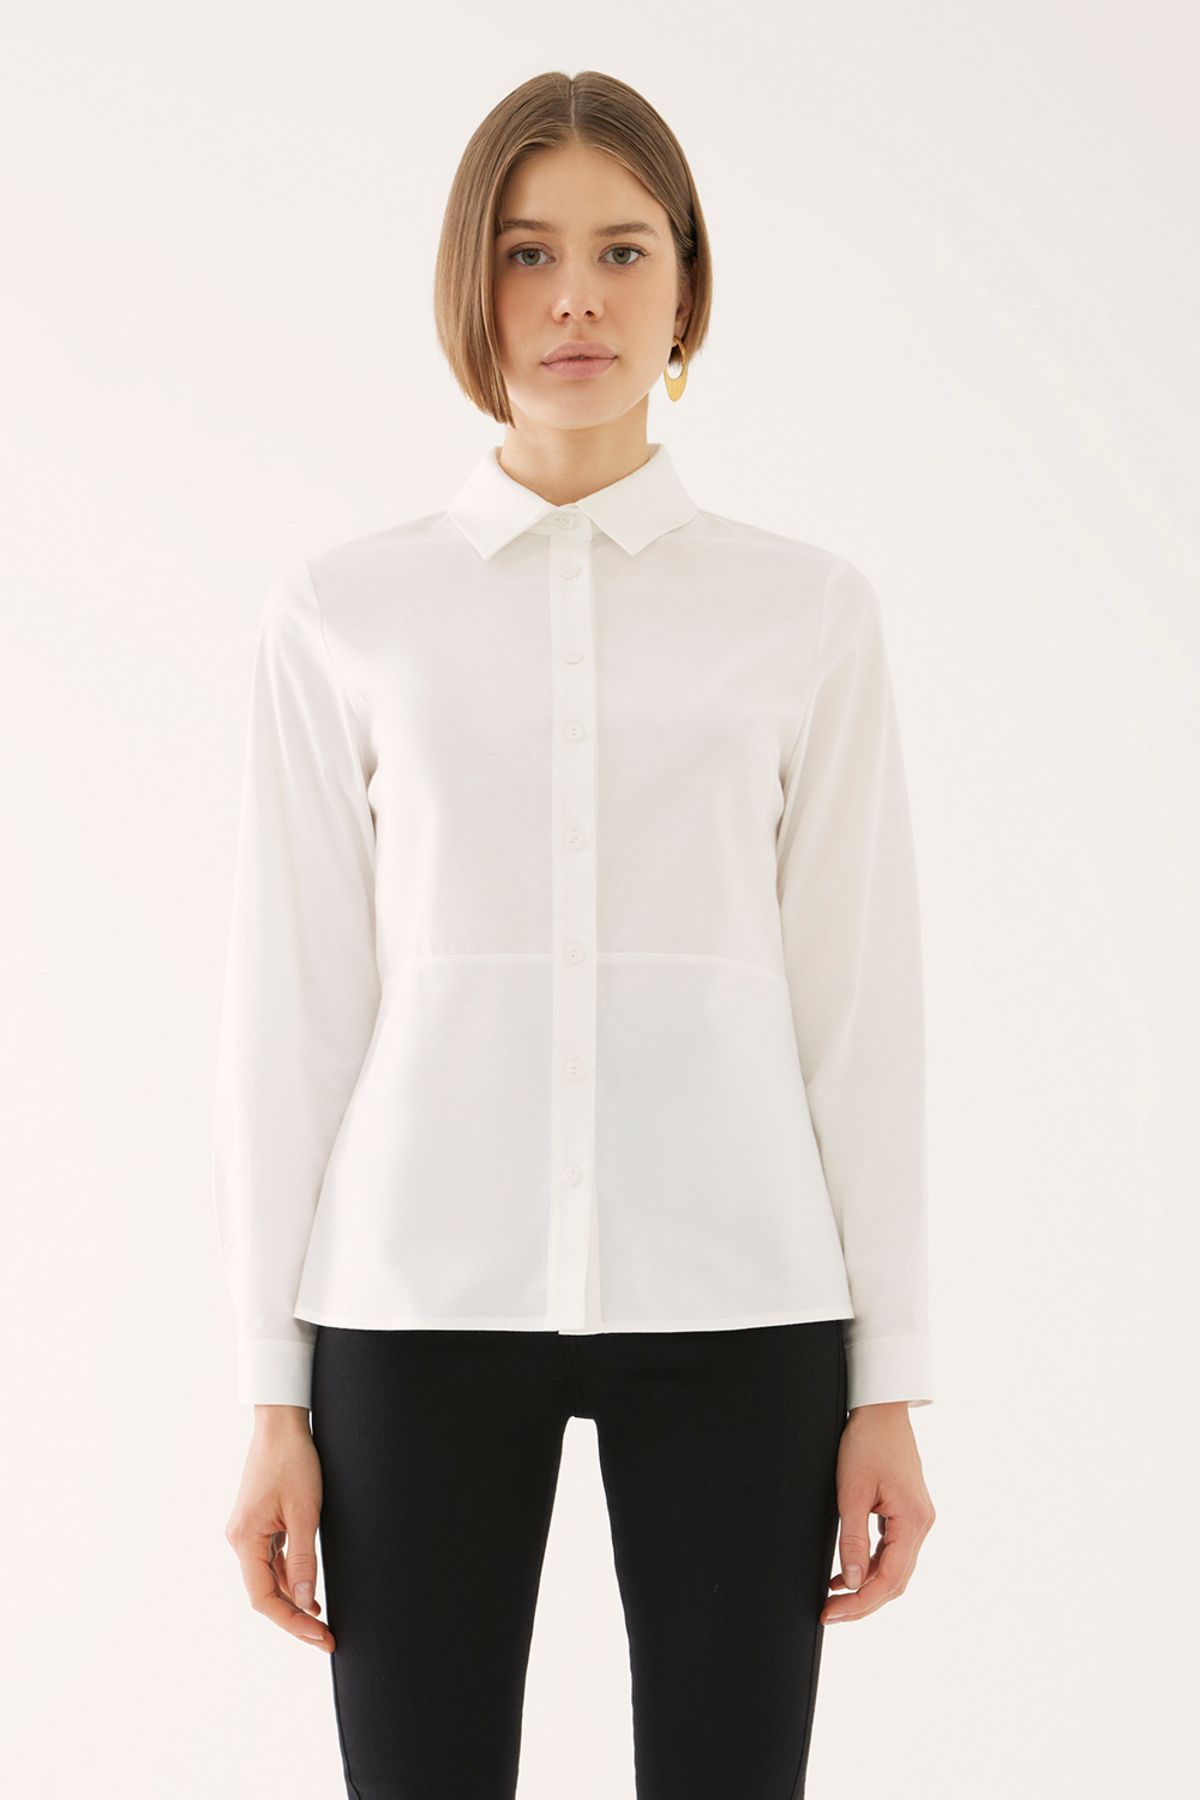 Perspective Elis Slim Fit Standart Boy Takma Kol Gömlek Yaka Beyaz Renk Kadın Gömlek